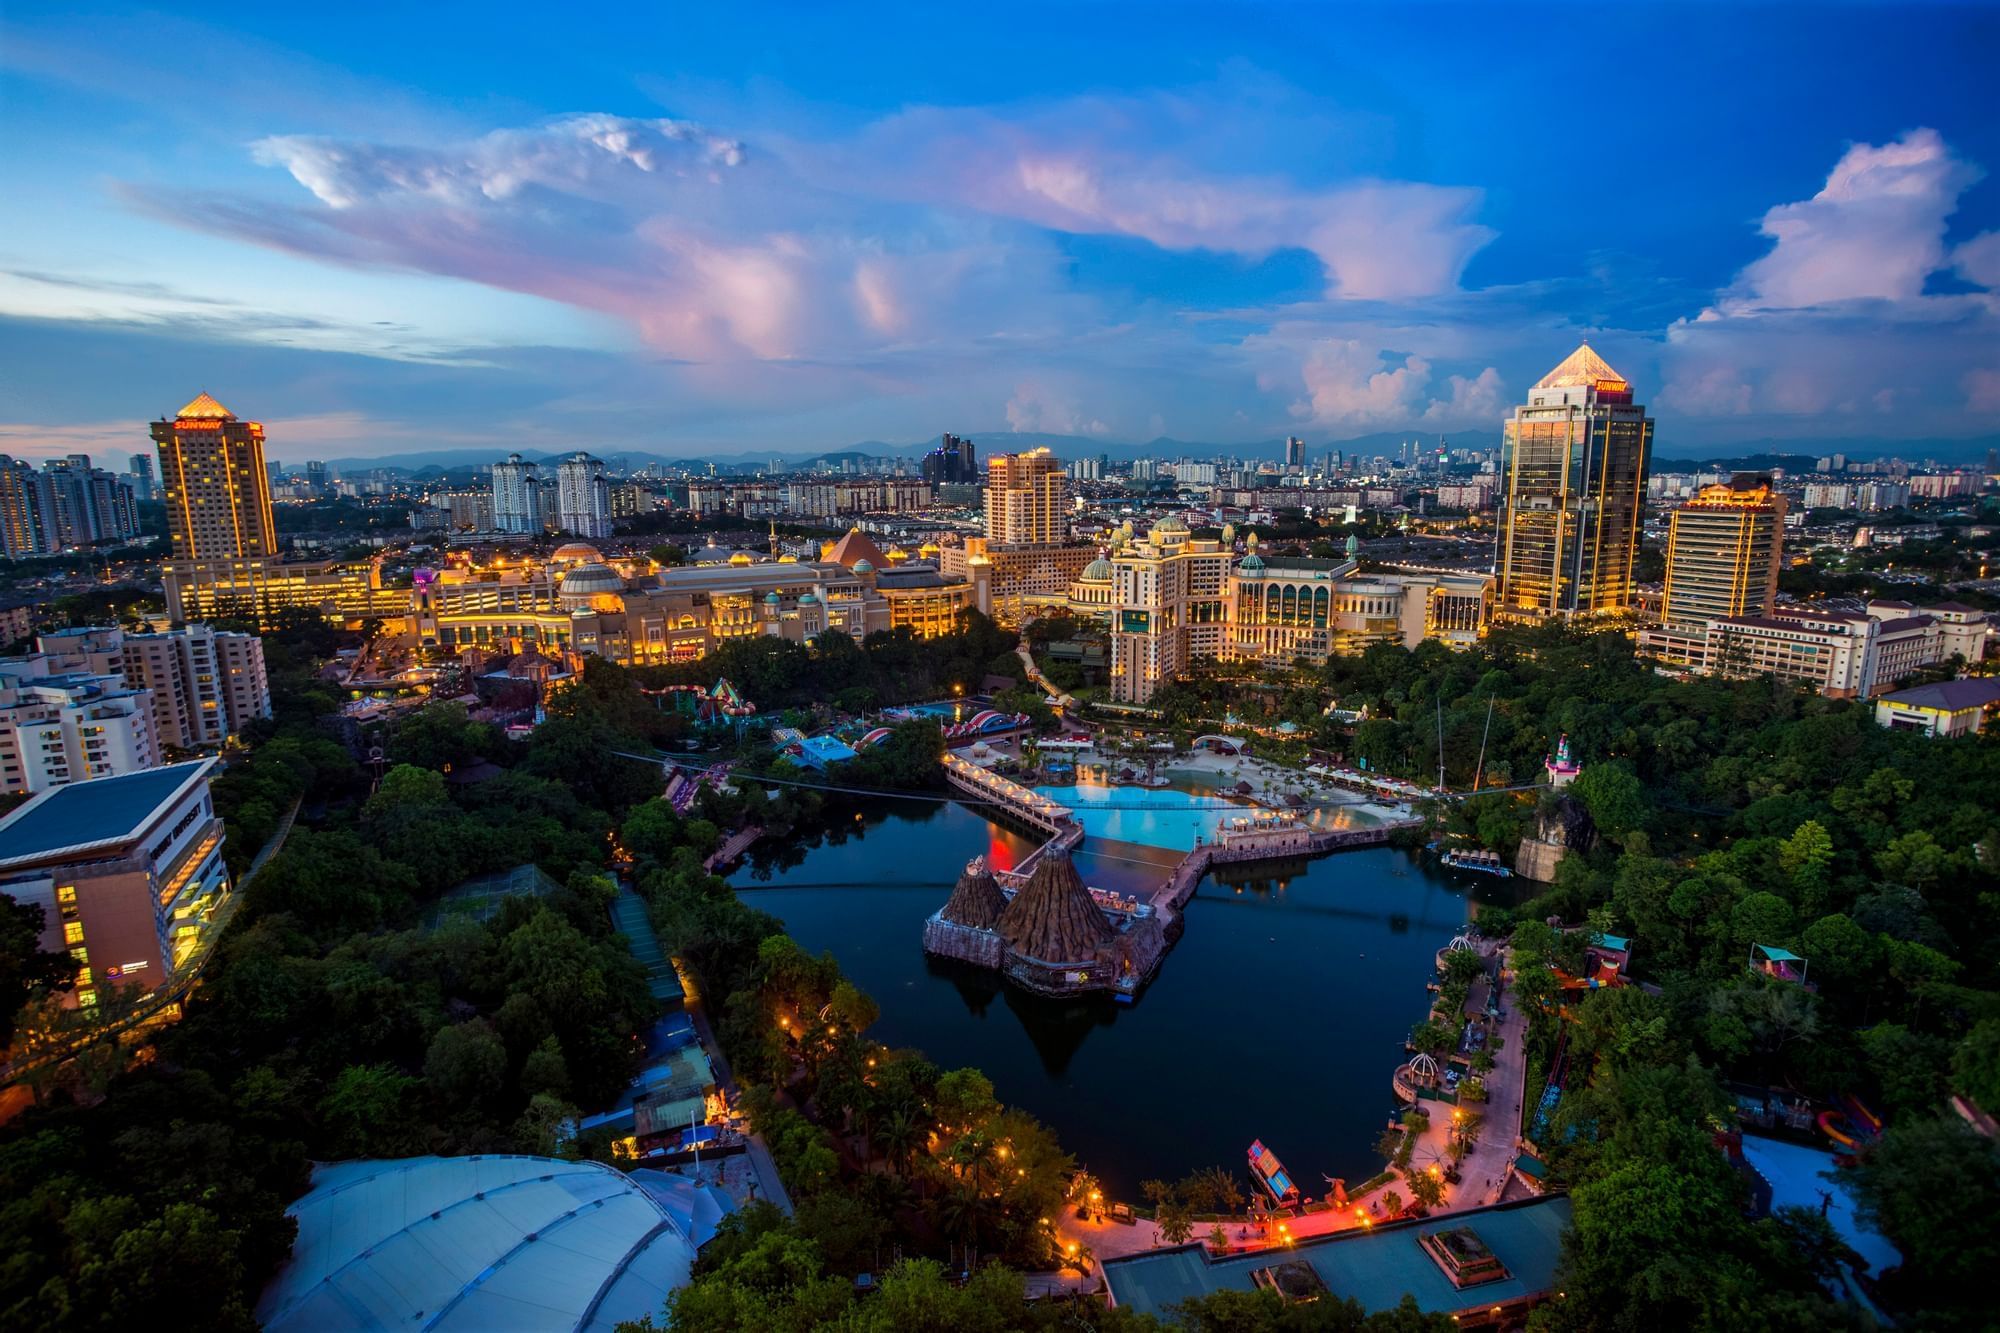 Aerial view of the city around Sunway Resort